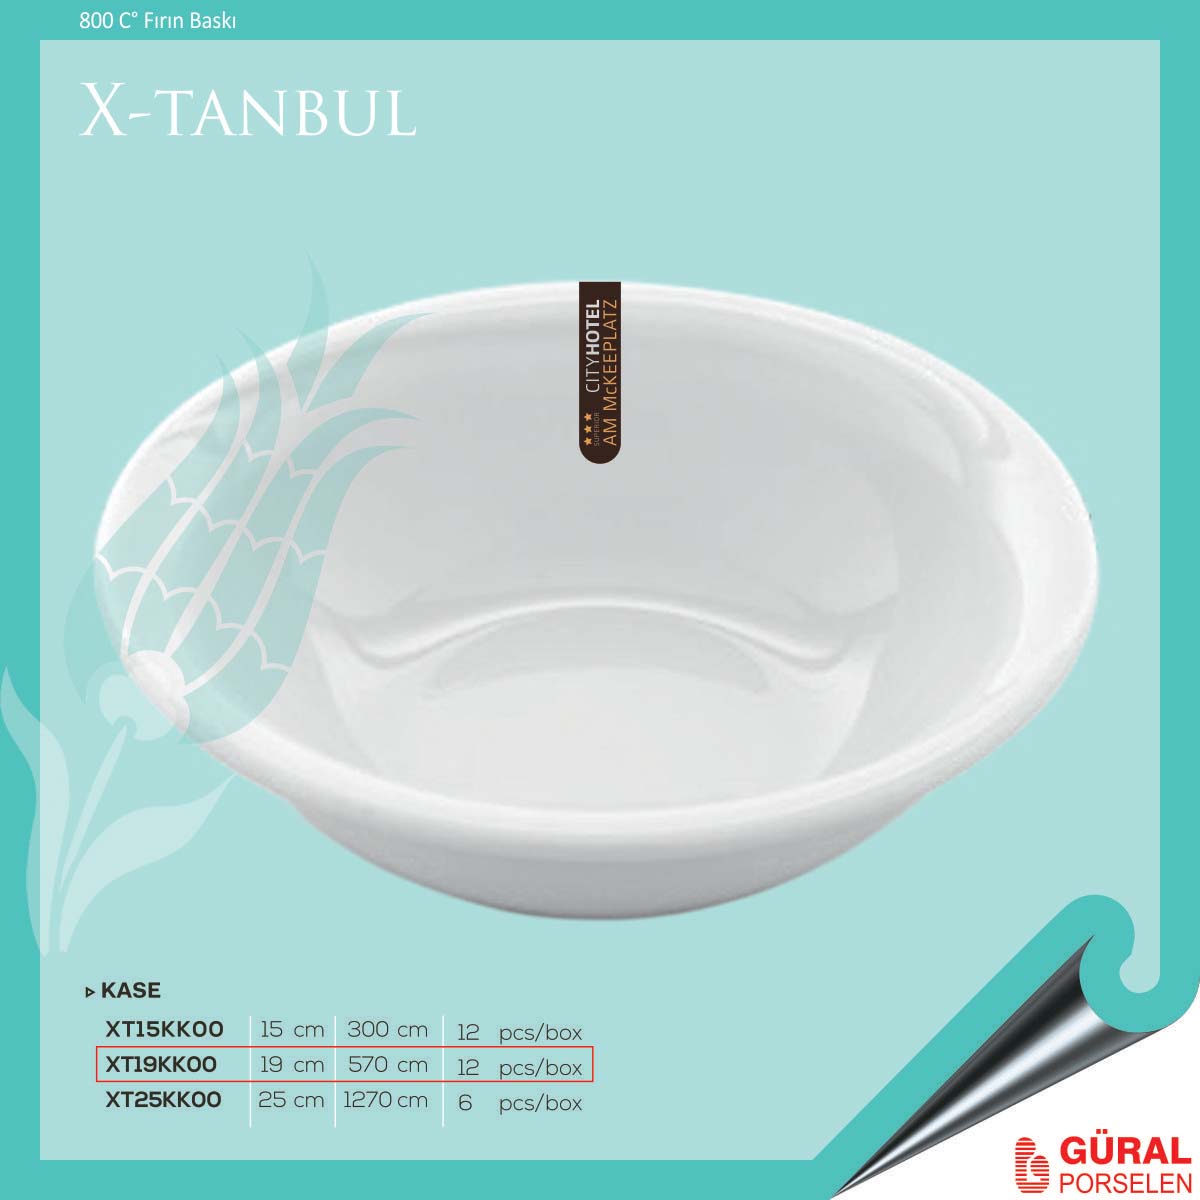 X-tanbul Kase 19 cm